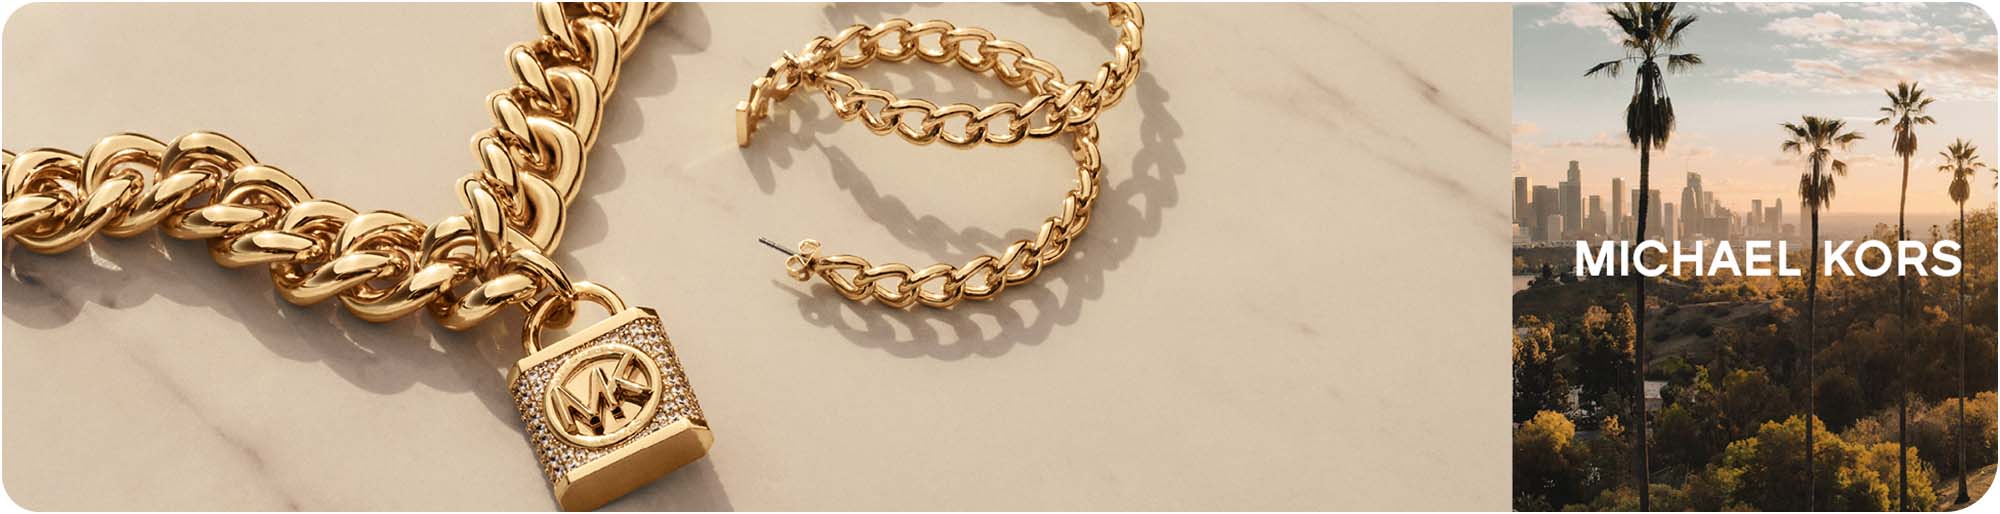 Bracelet Michael Kors Gold in Chain  22712510